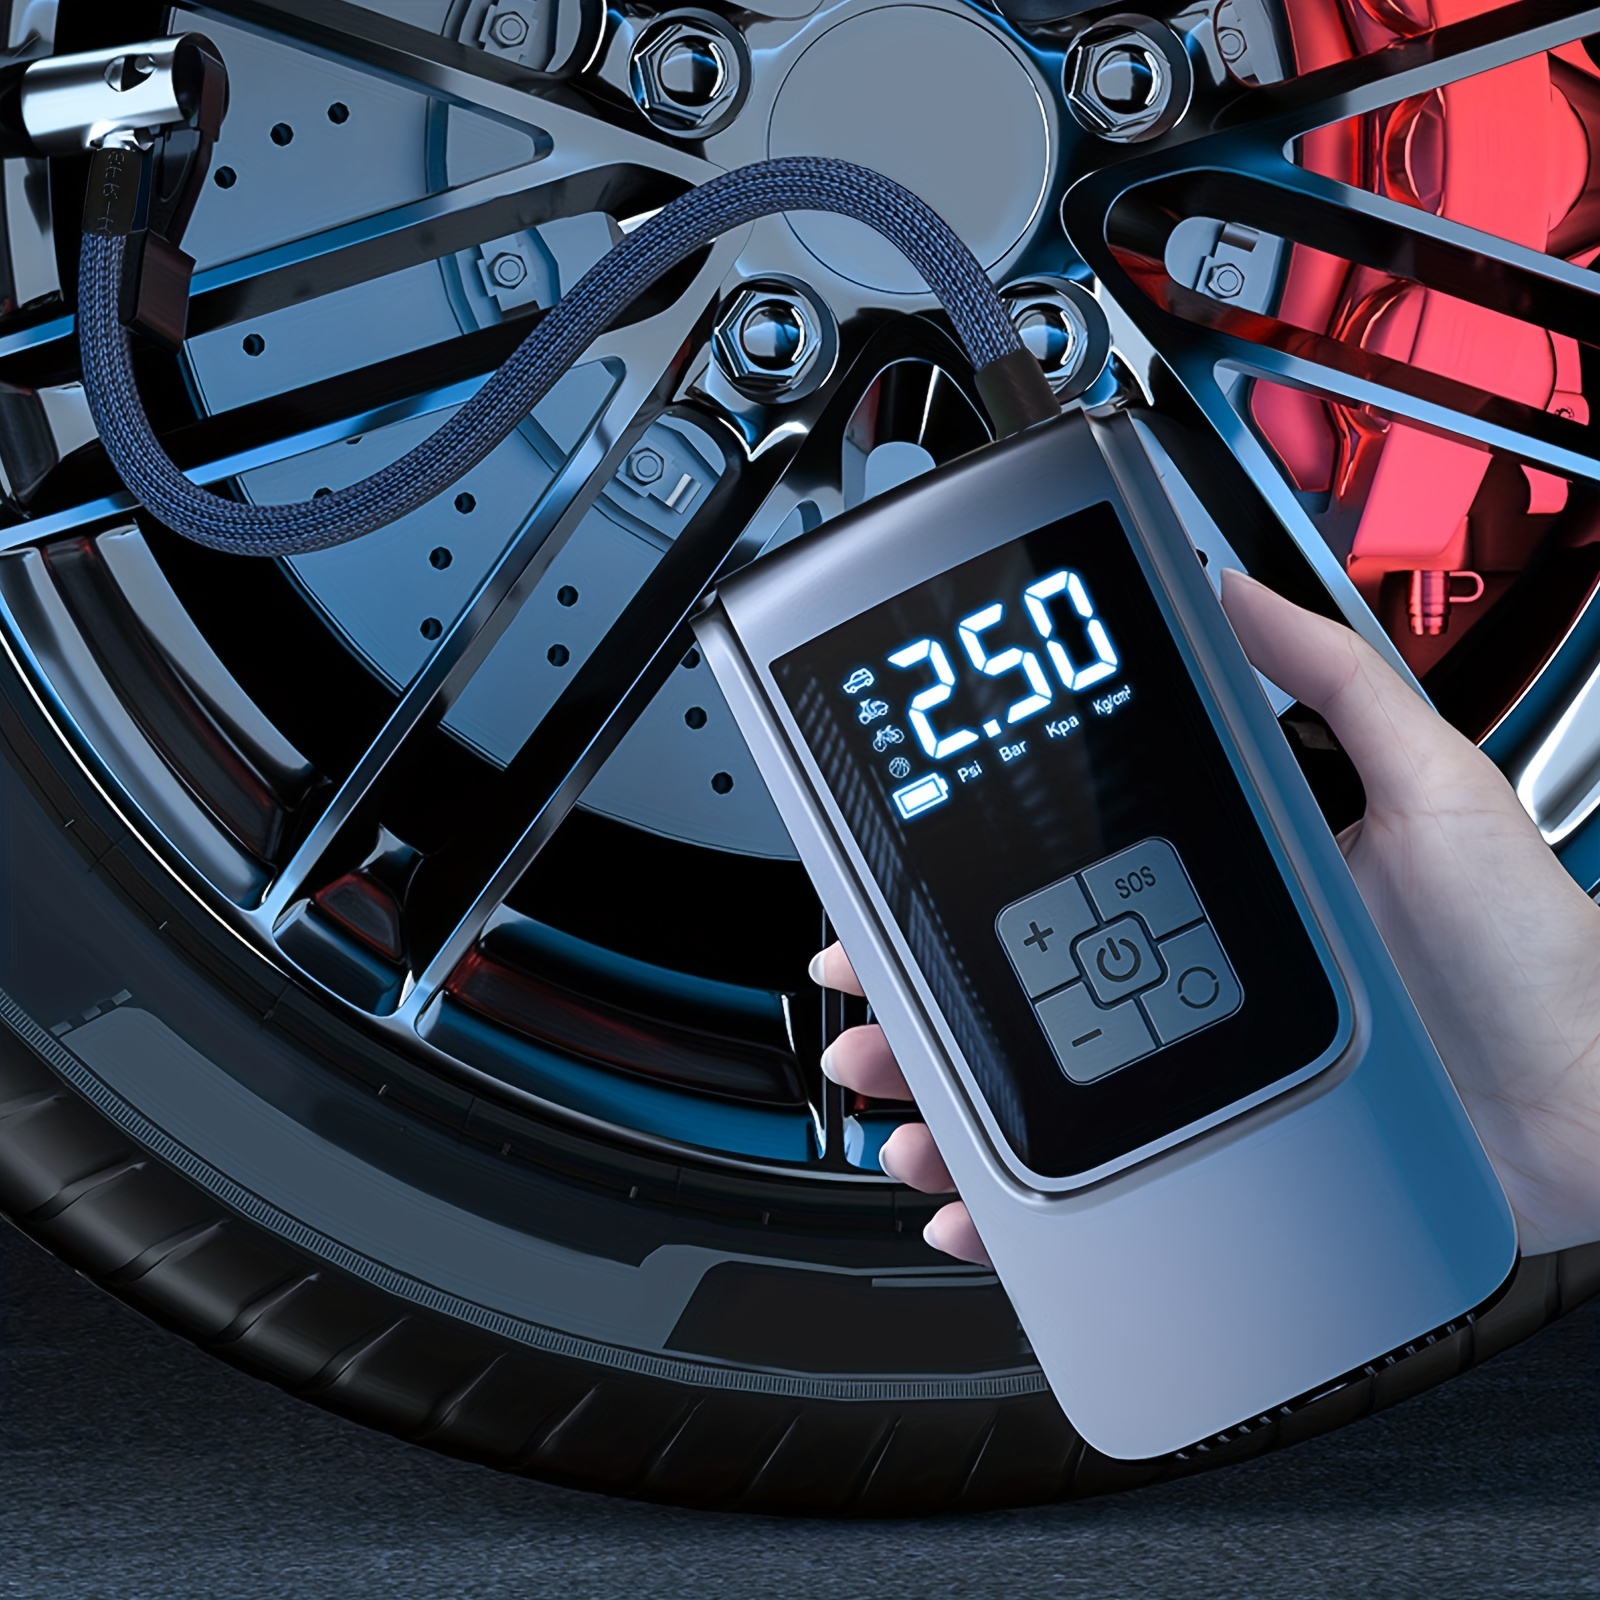 Compresores portátiles: Hinchar tus ruedas por el camino - Vida En Moto  Vida En Moto